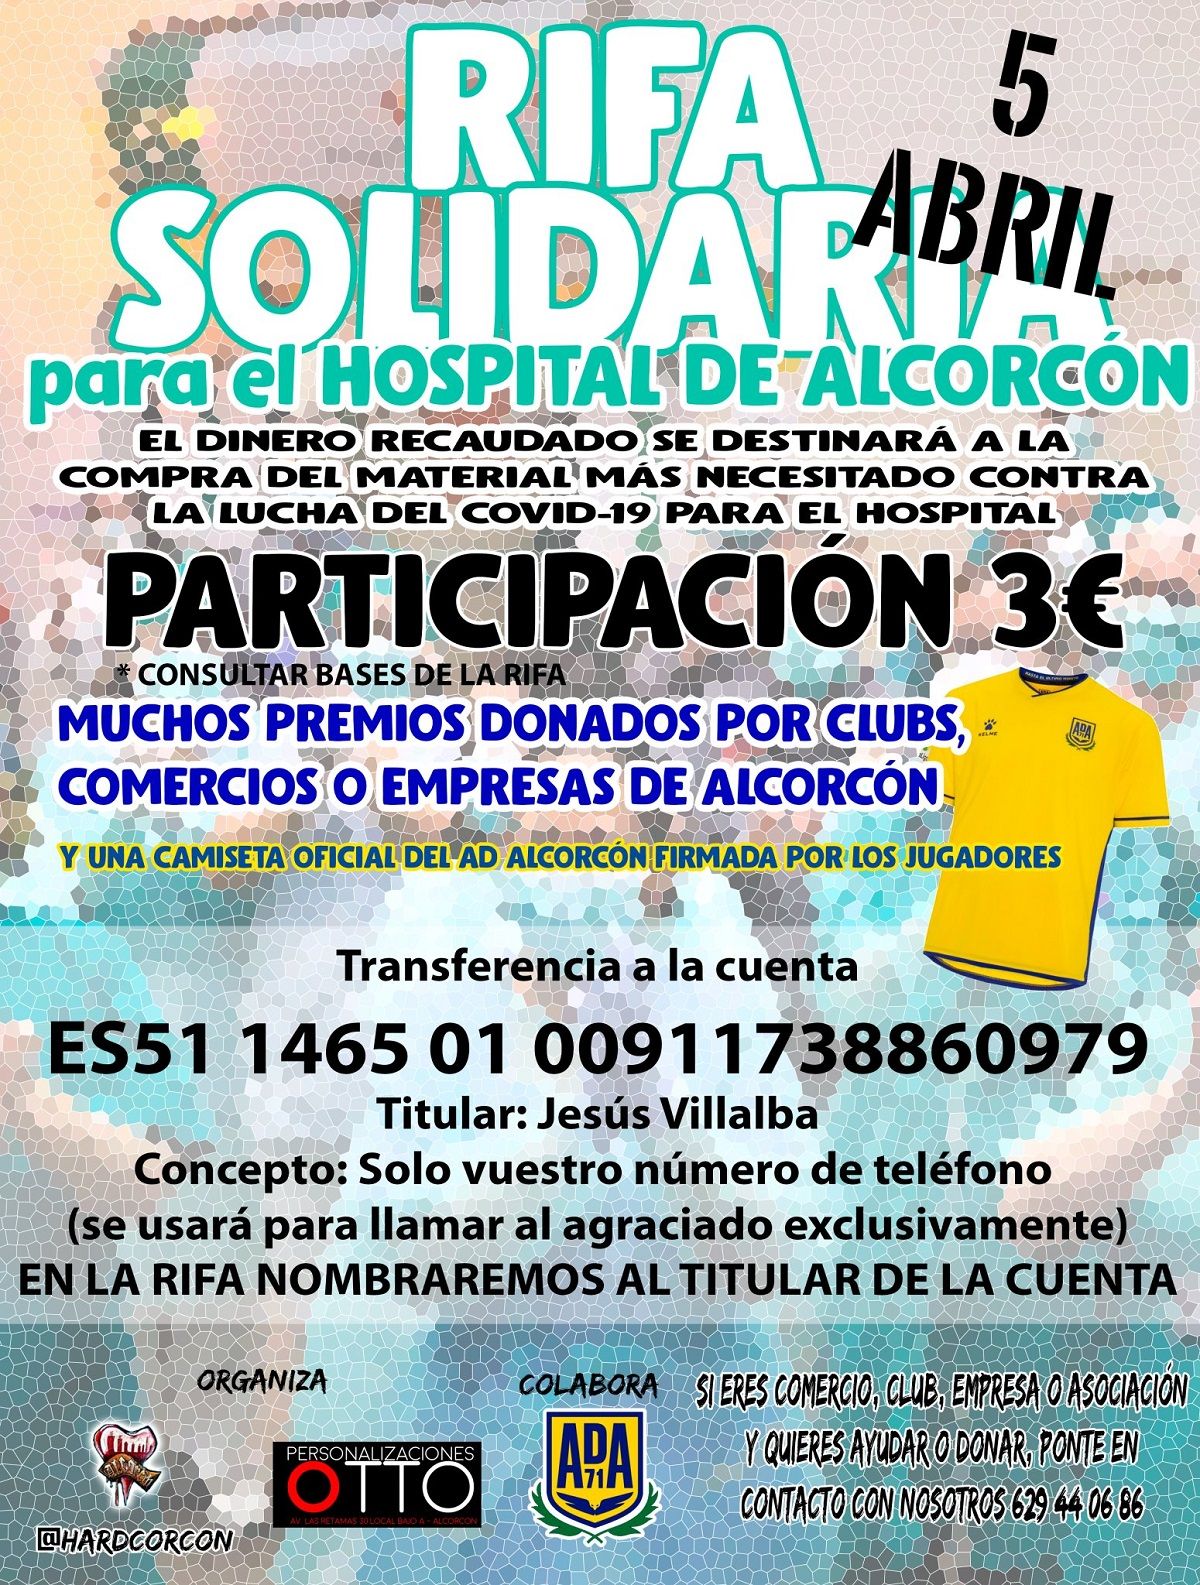 #RifaAlcorcón en favor del Hospital Fundación Alcorcón